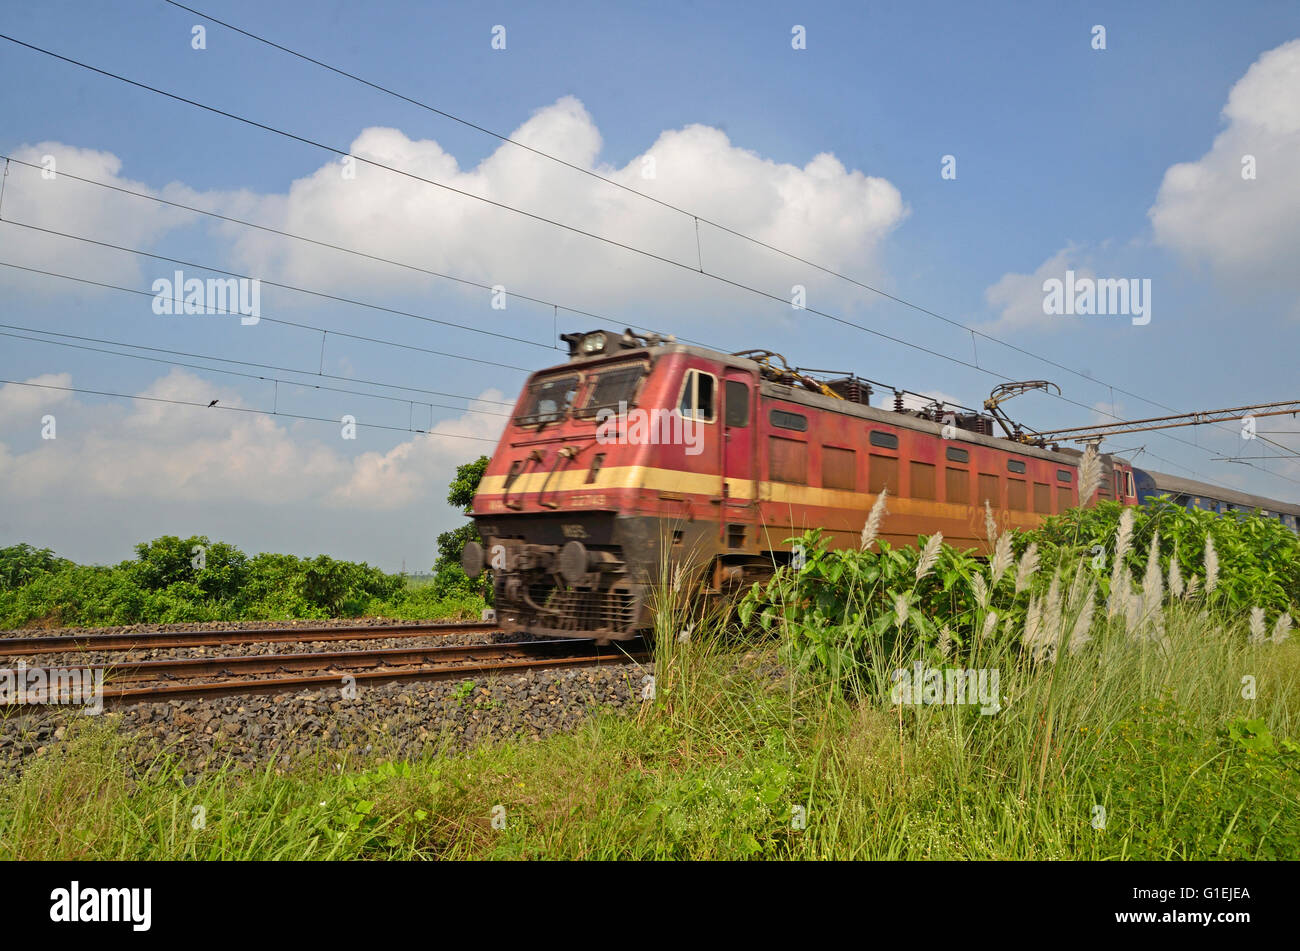 Le WAP-4 class 5000 locomotive électrique de puissance de fer indiens Double Decker transport express, communauté rurale de l'Ouest Bengale, Inde Banque D'Images